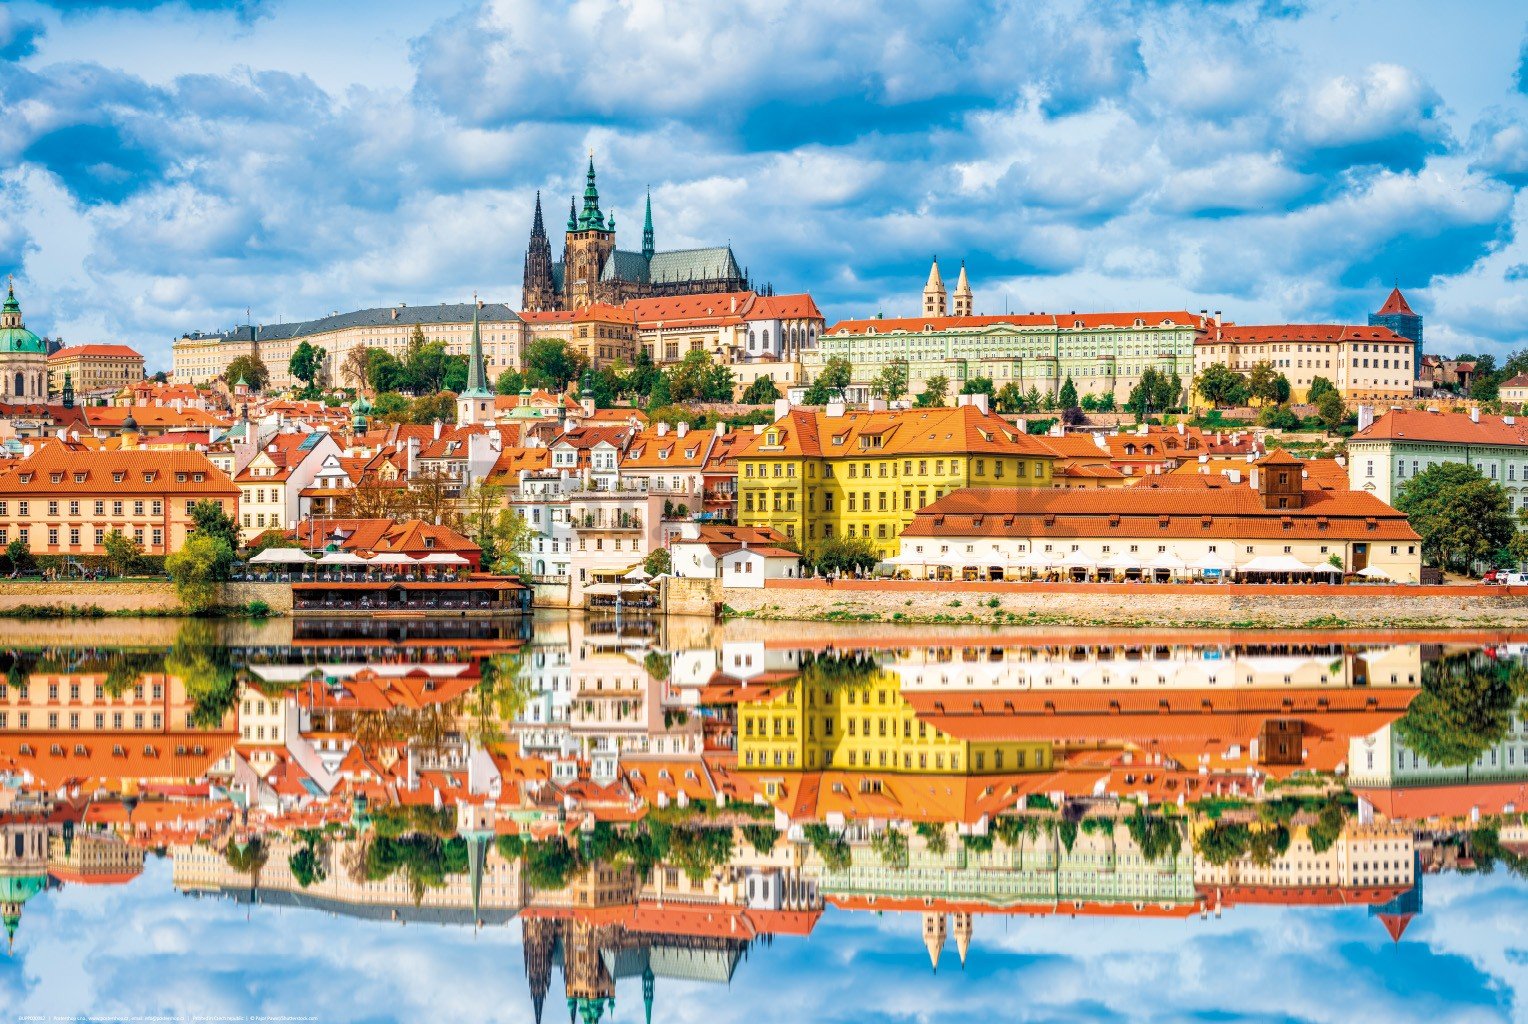 Plagát: Pohľad na Pražský hrad